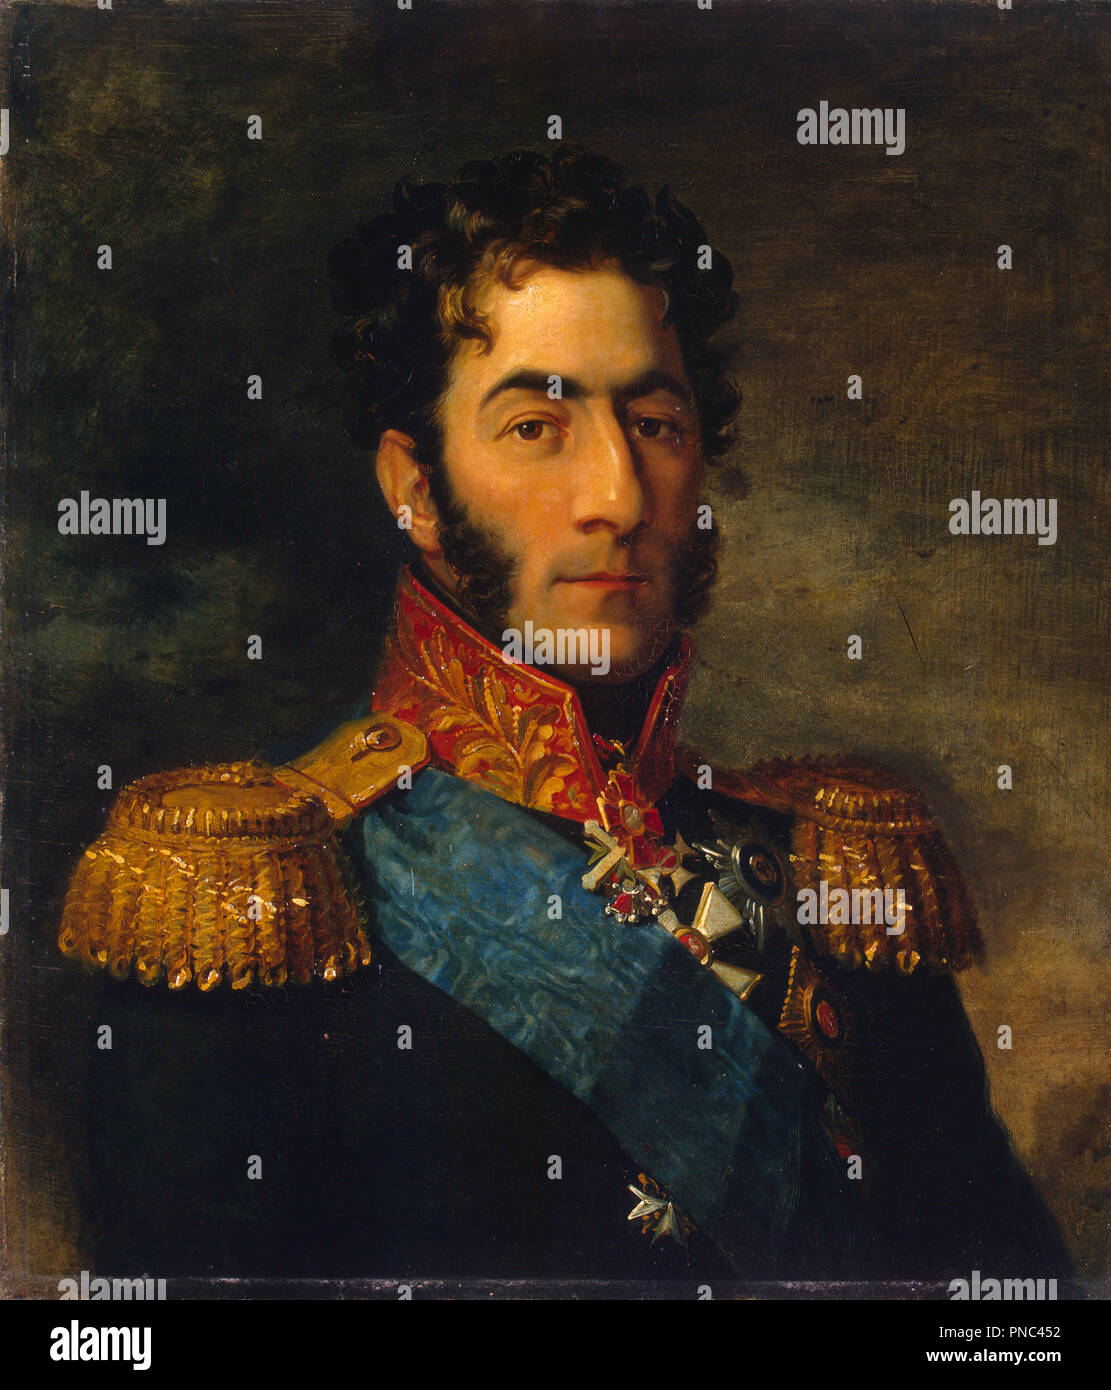 Portrait von General Pjotr Bagration (1765-1812). Datum/Zeitraum: Spätestens 1825. Malerei. Öl auf Leinwand. Höhe: 62,5 cm (24,6 in); Breite: 70 cm (27,5 in). Autor: George Dawe. DAWE, George. Stockfoto